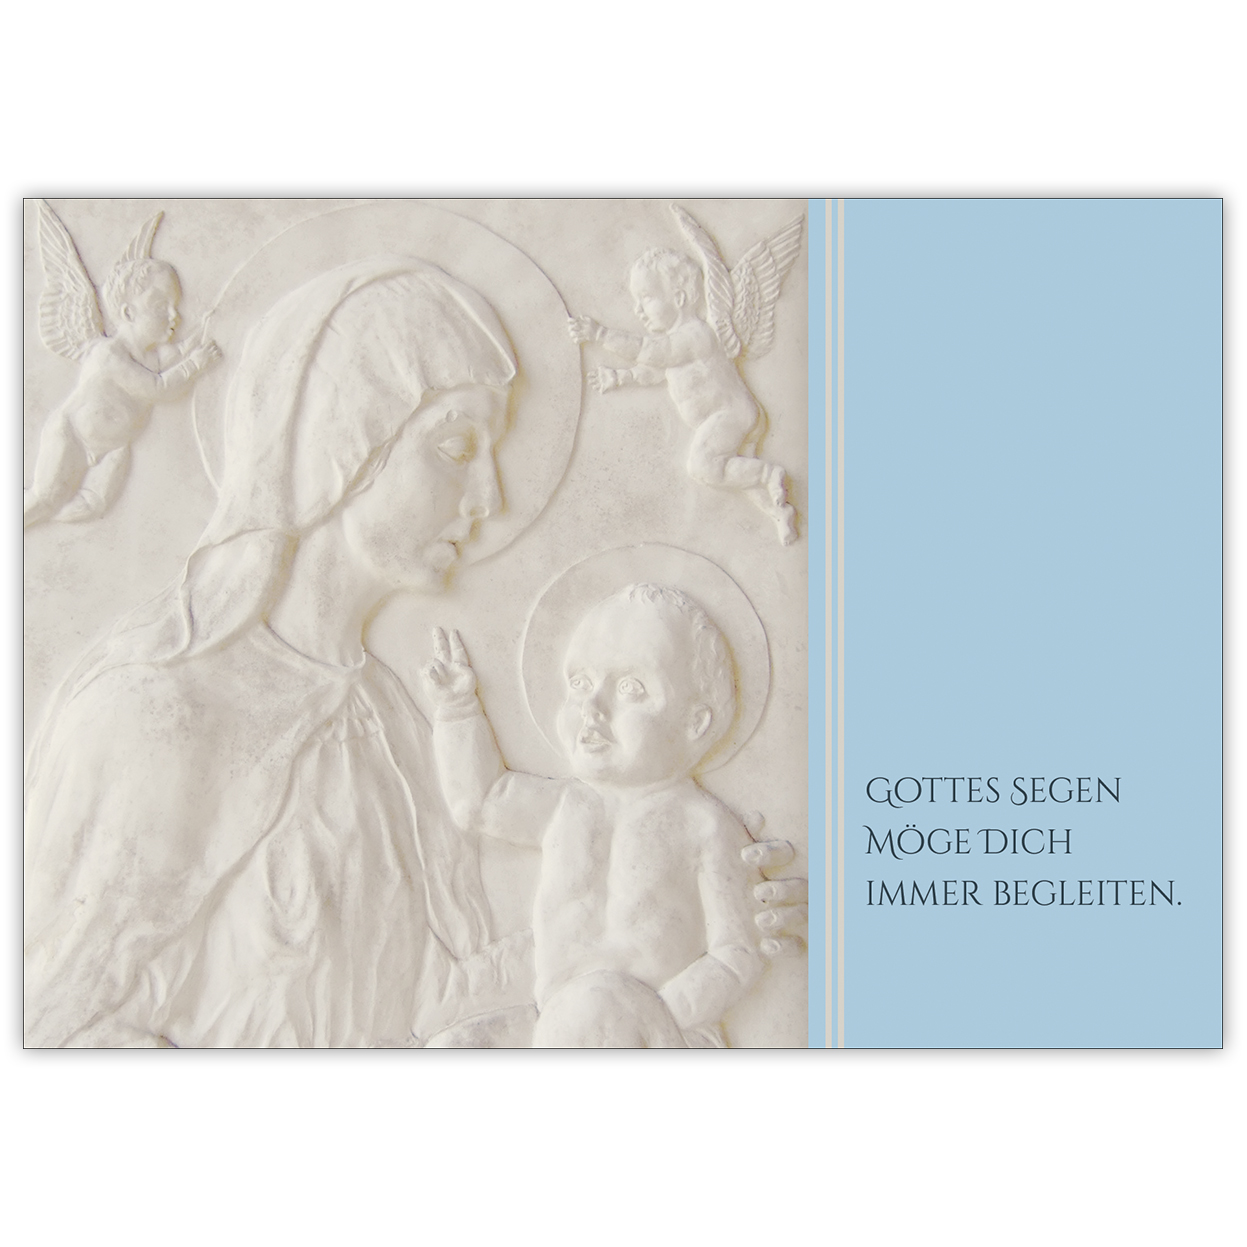 Christliche Glückwunschkarte mit Madonna und Kind in hellblau: Gottes Segen möge Dich immer begleiten zur Taufe, Konfirmation oder Firmung